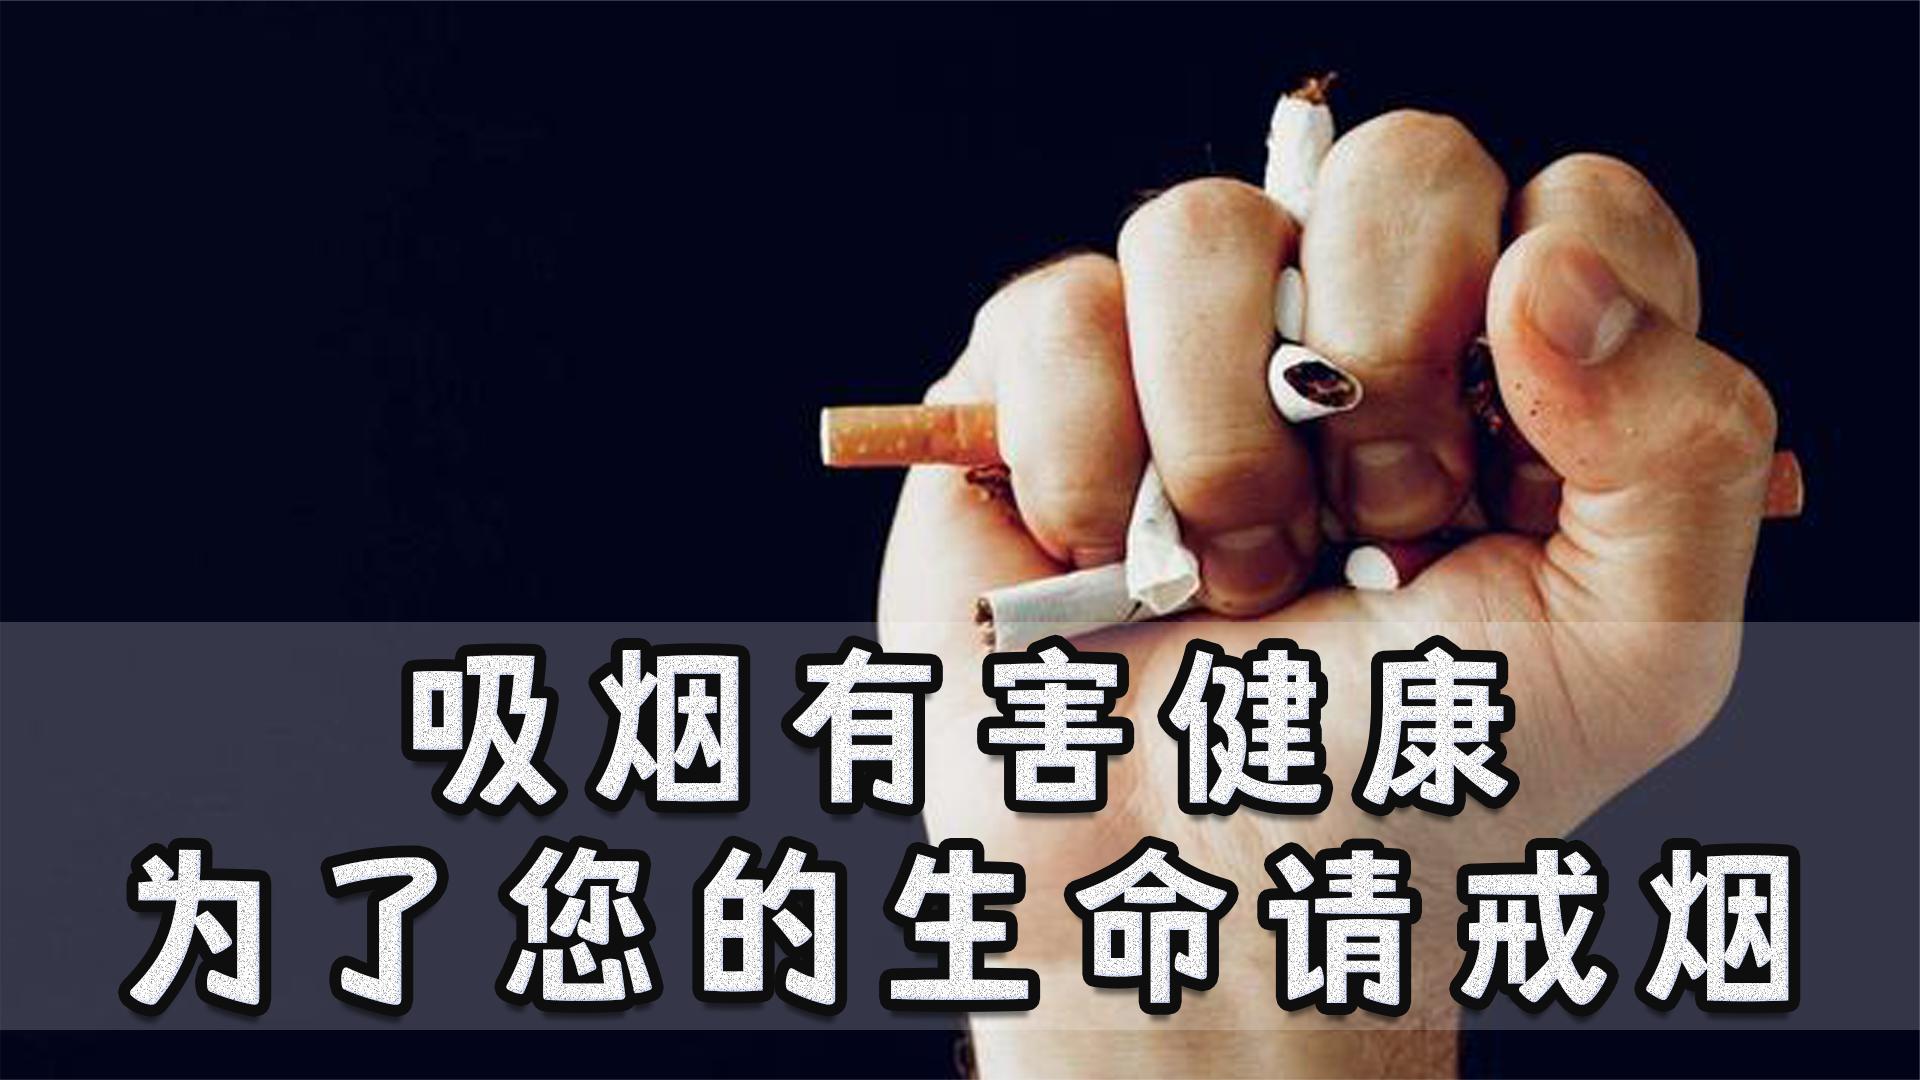 戒烟的高清壁纸图片